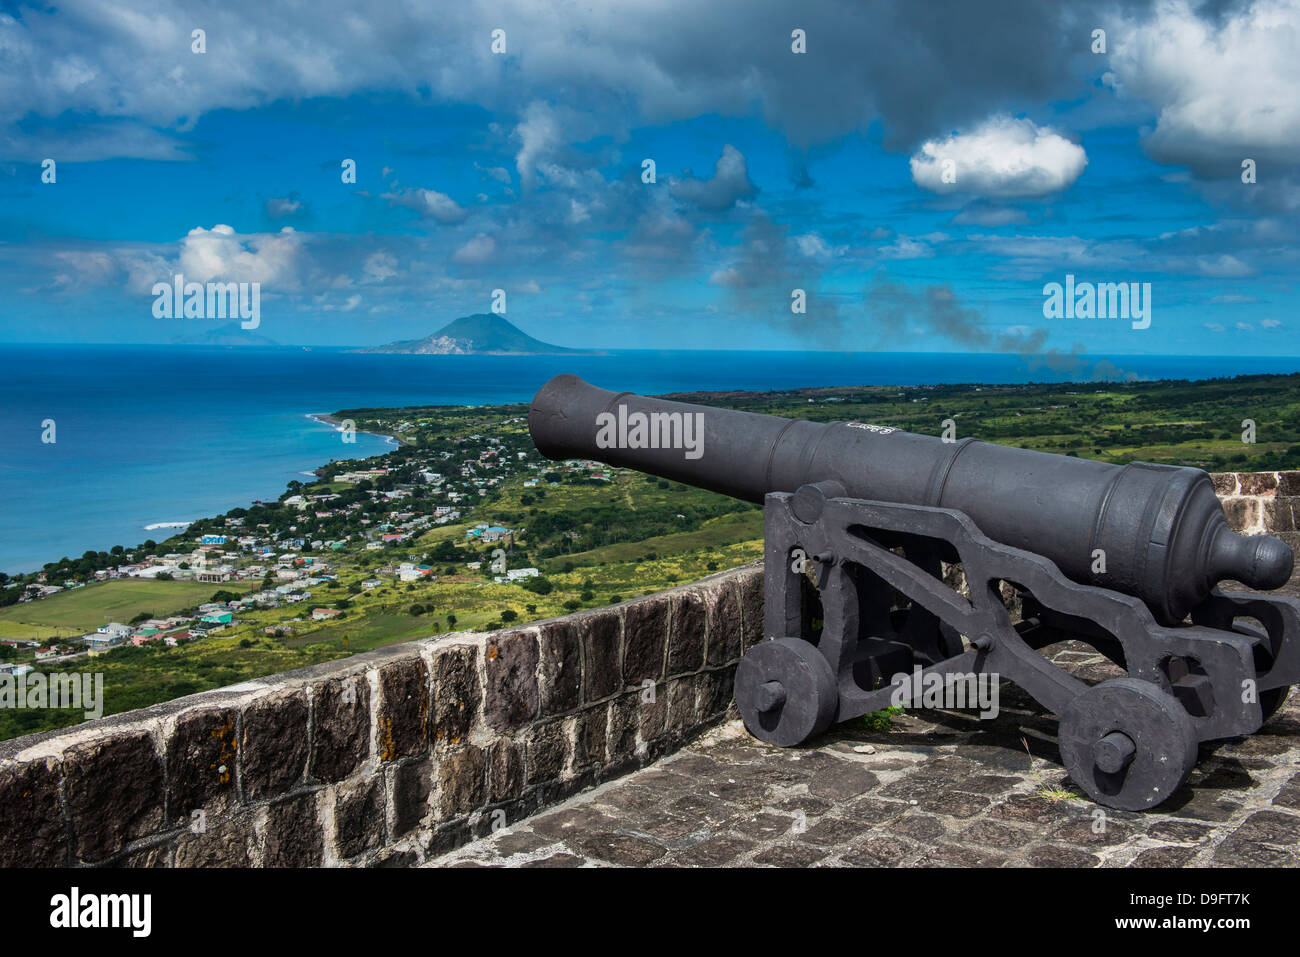 La forteresse de Brimstone Hill, UNESCO World Heritage Site, Saint Kitts, Saint Kitts et Nevis, Iles sous le vent, Antilles, Caraïbes Banque D'Images